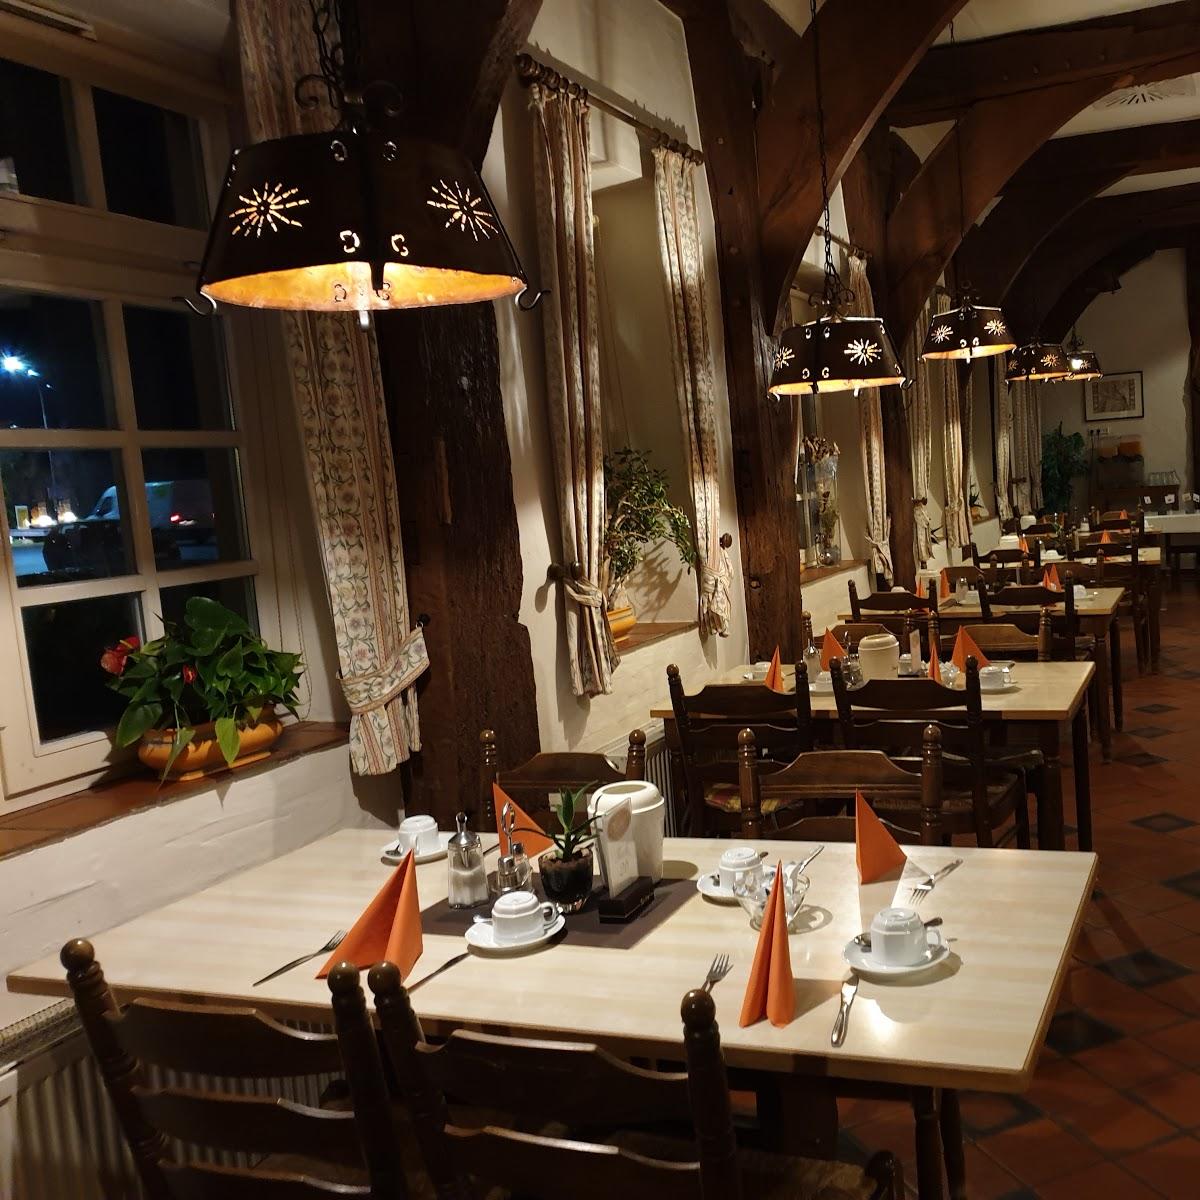 Restaurant "Shell Autohof Vechta" in Bakum